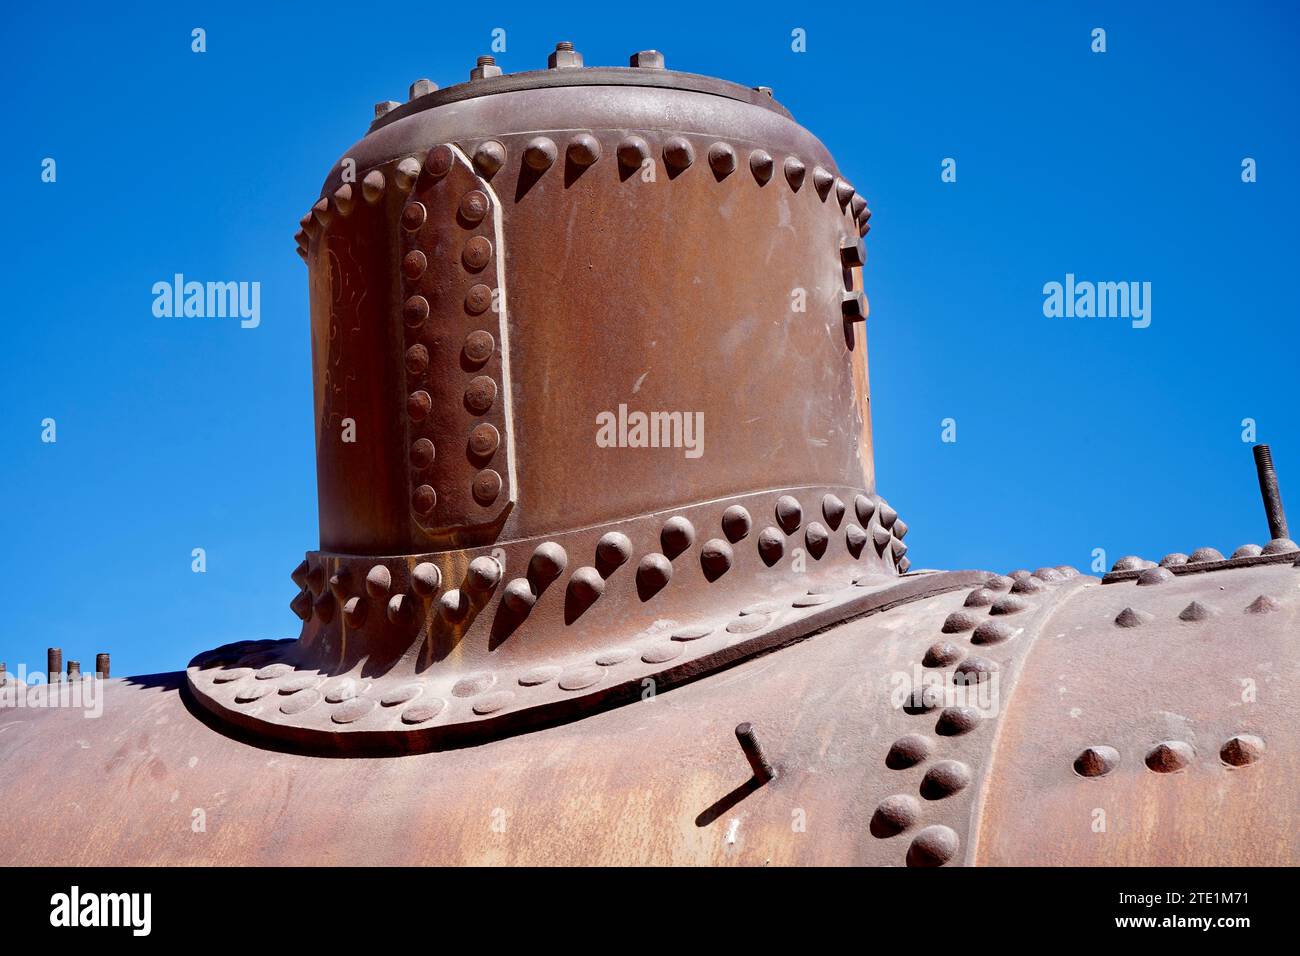 Hierro oxidado en un tren de vapor abandonado bajo un cielo azul. Foto de stock